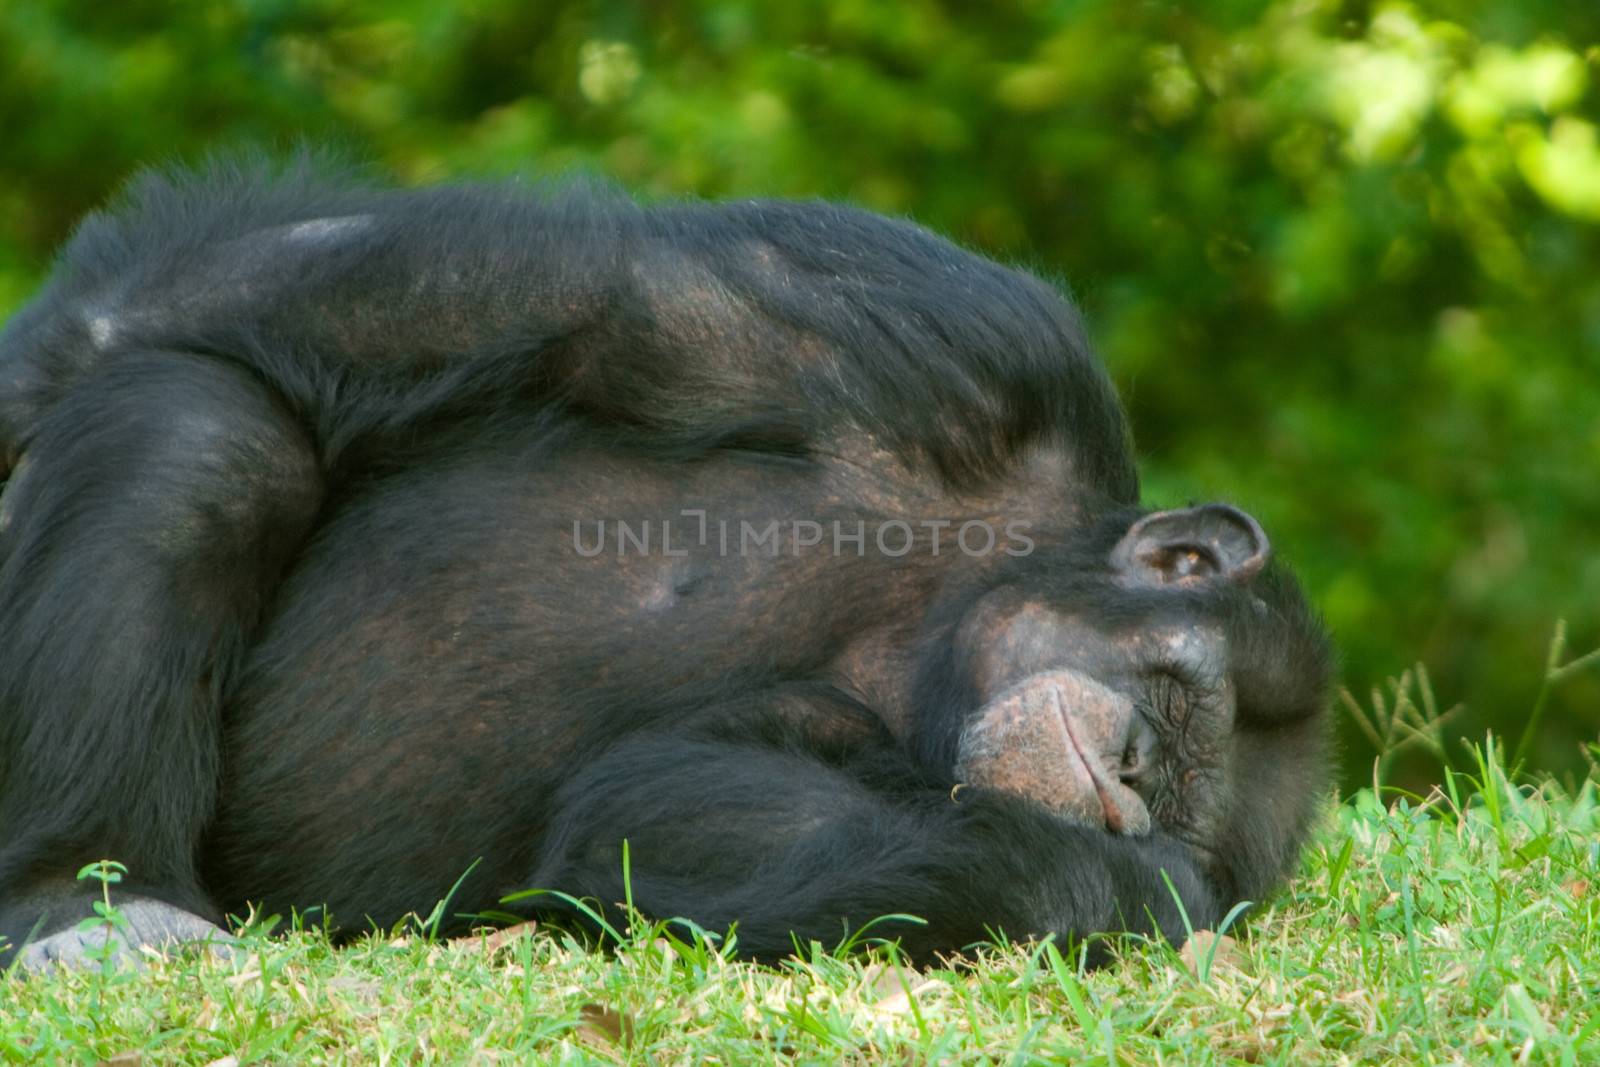 Chimpanzee sleeping on grass by CelsoDiniz